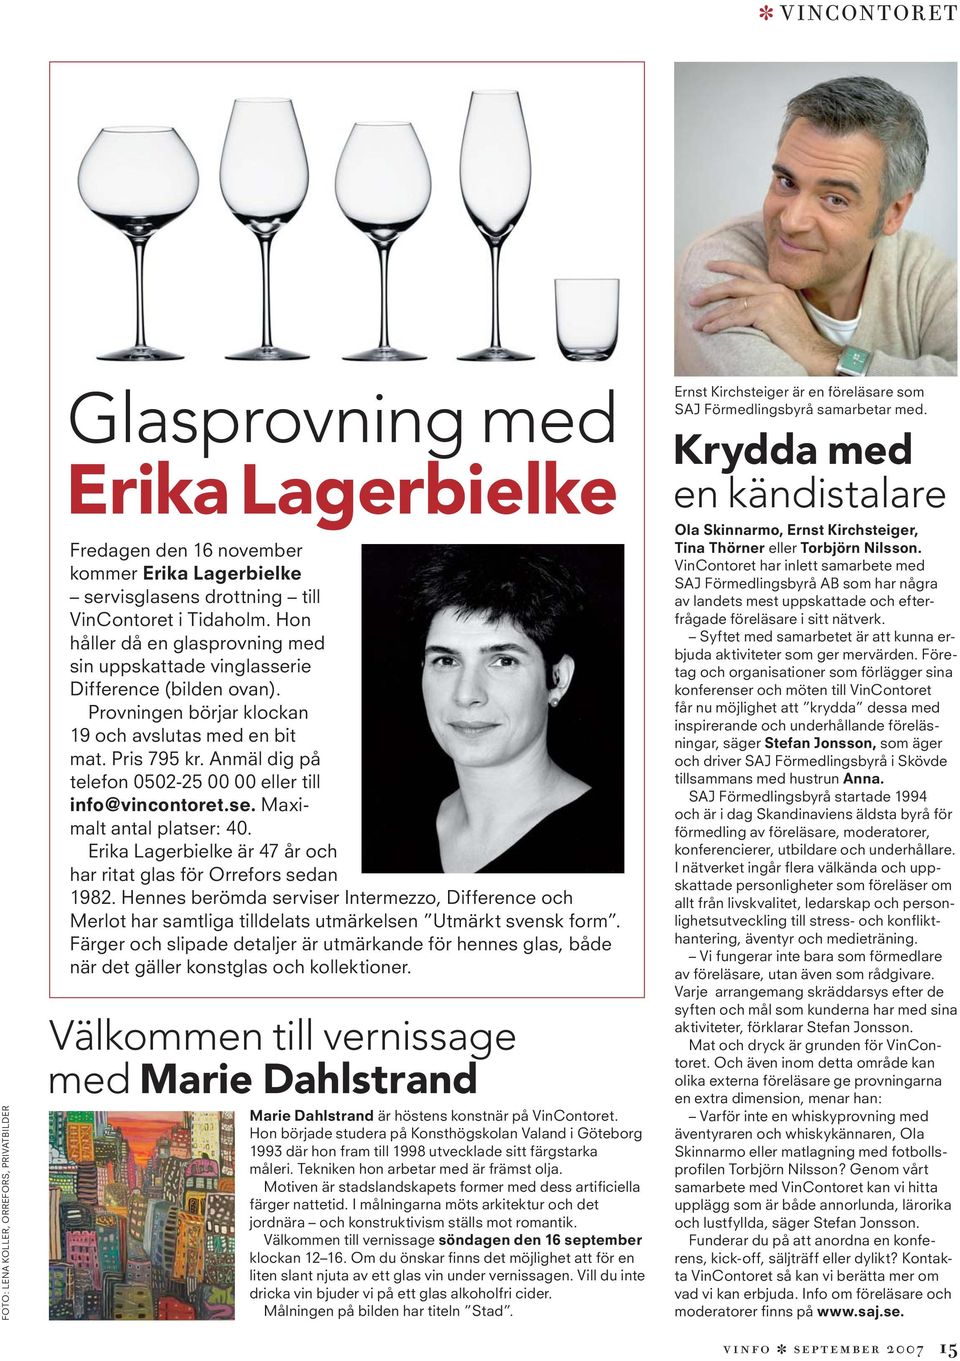 Anmäl dig på telefon 0502-25 00 00 eller till info@vincontoret.se. Maximalt antal platser: 40. Erika Lagerbielke är 47 år och har ritat glas för Orrefors sedan 1982.